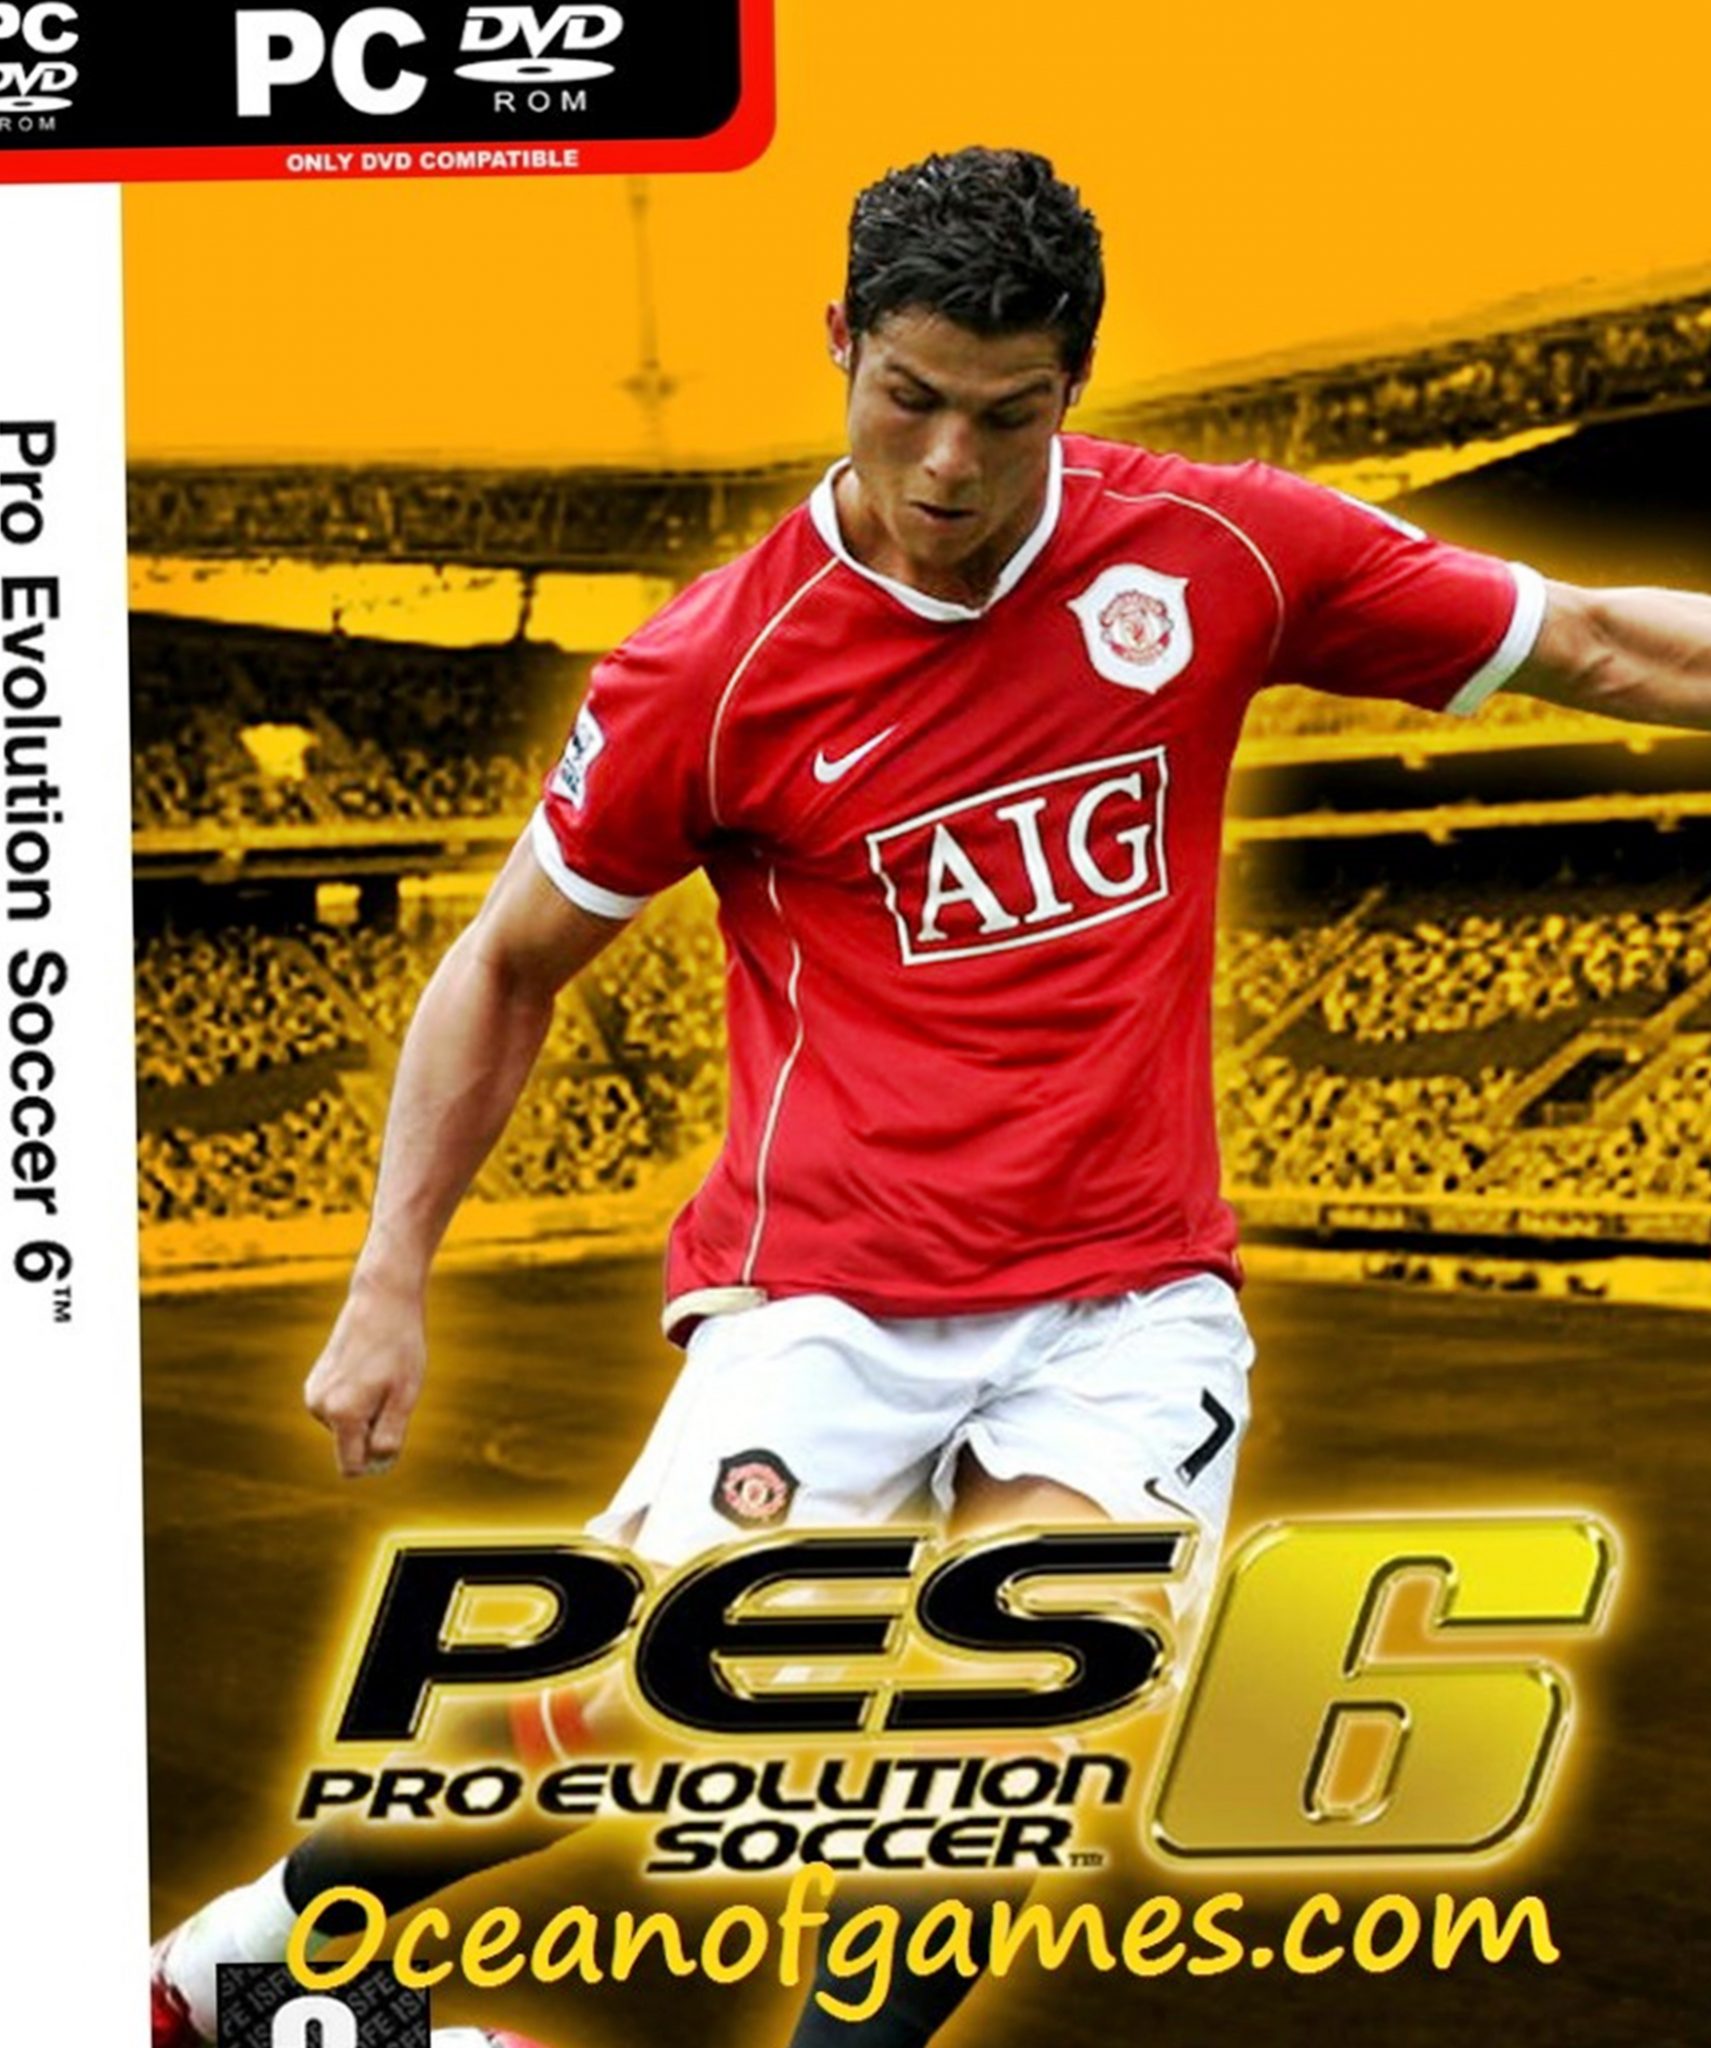 pro evolution soccer 4 download free